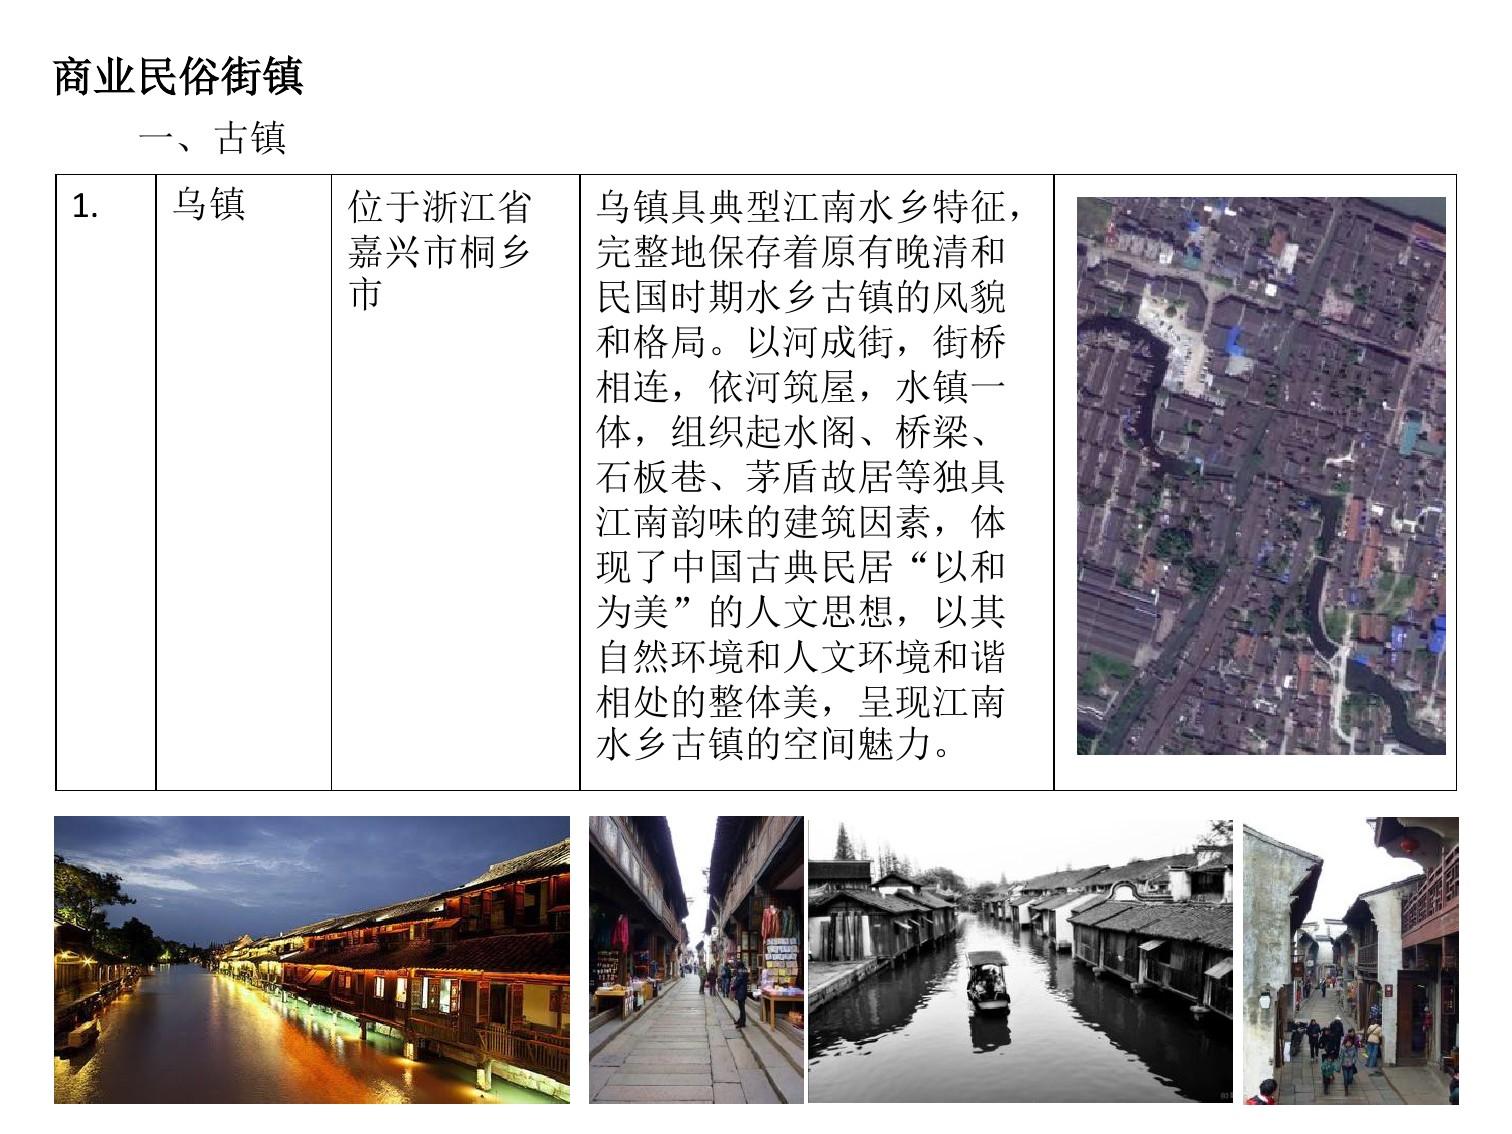 中国传统商业街案例分析(详细)